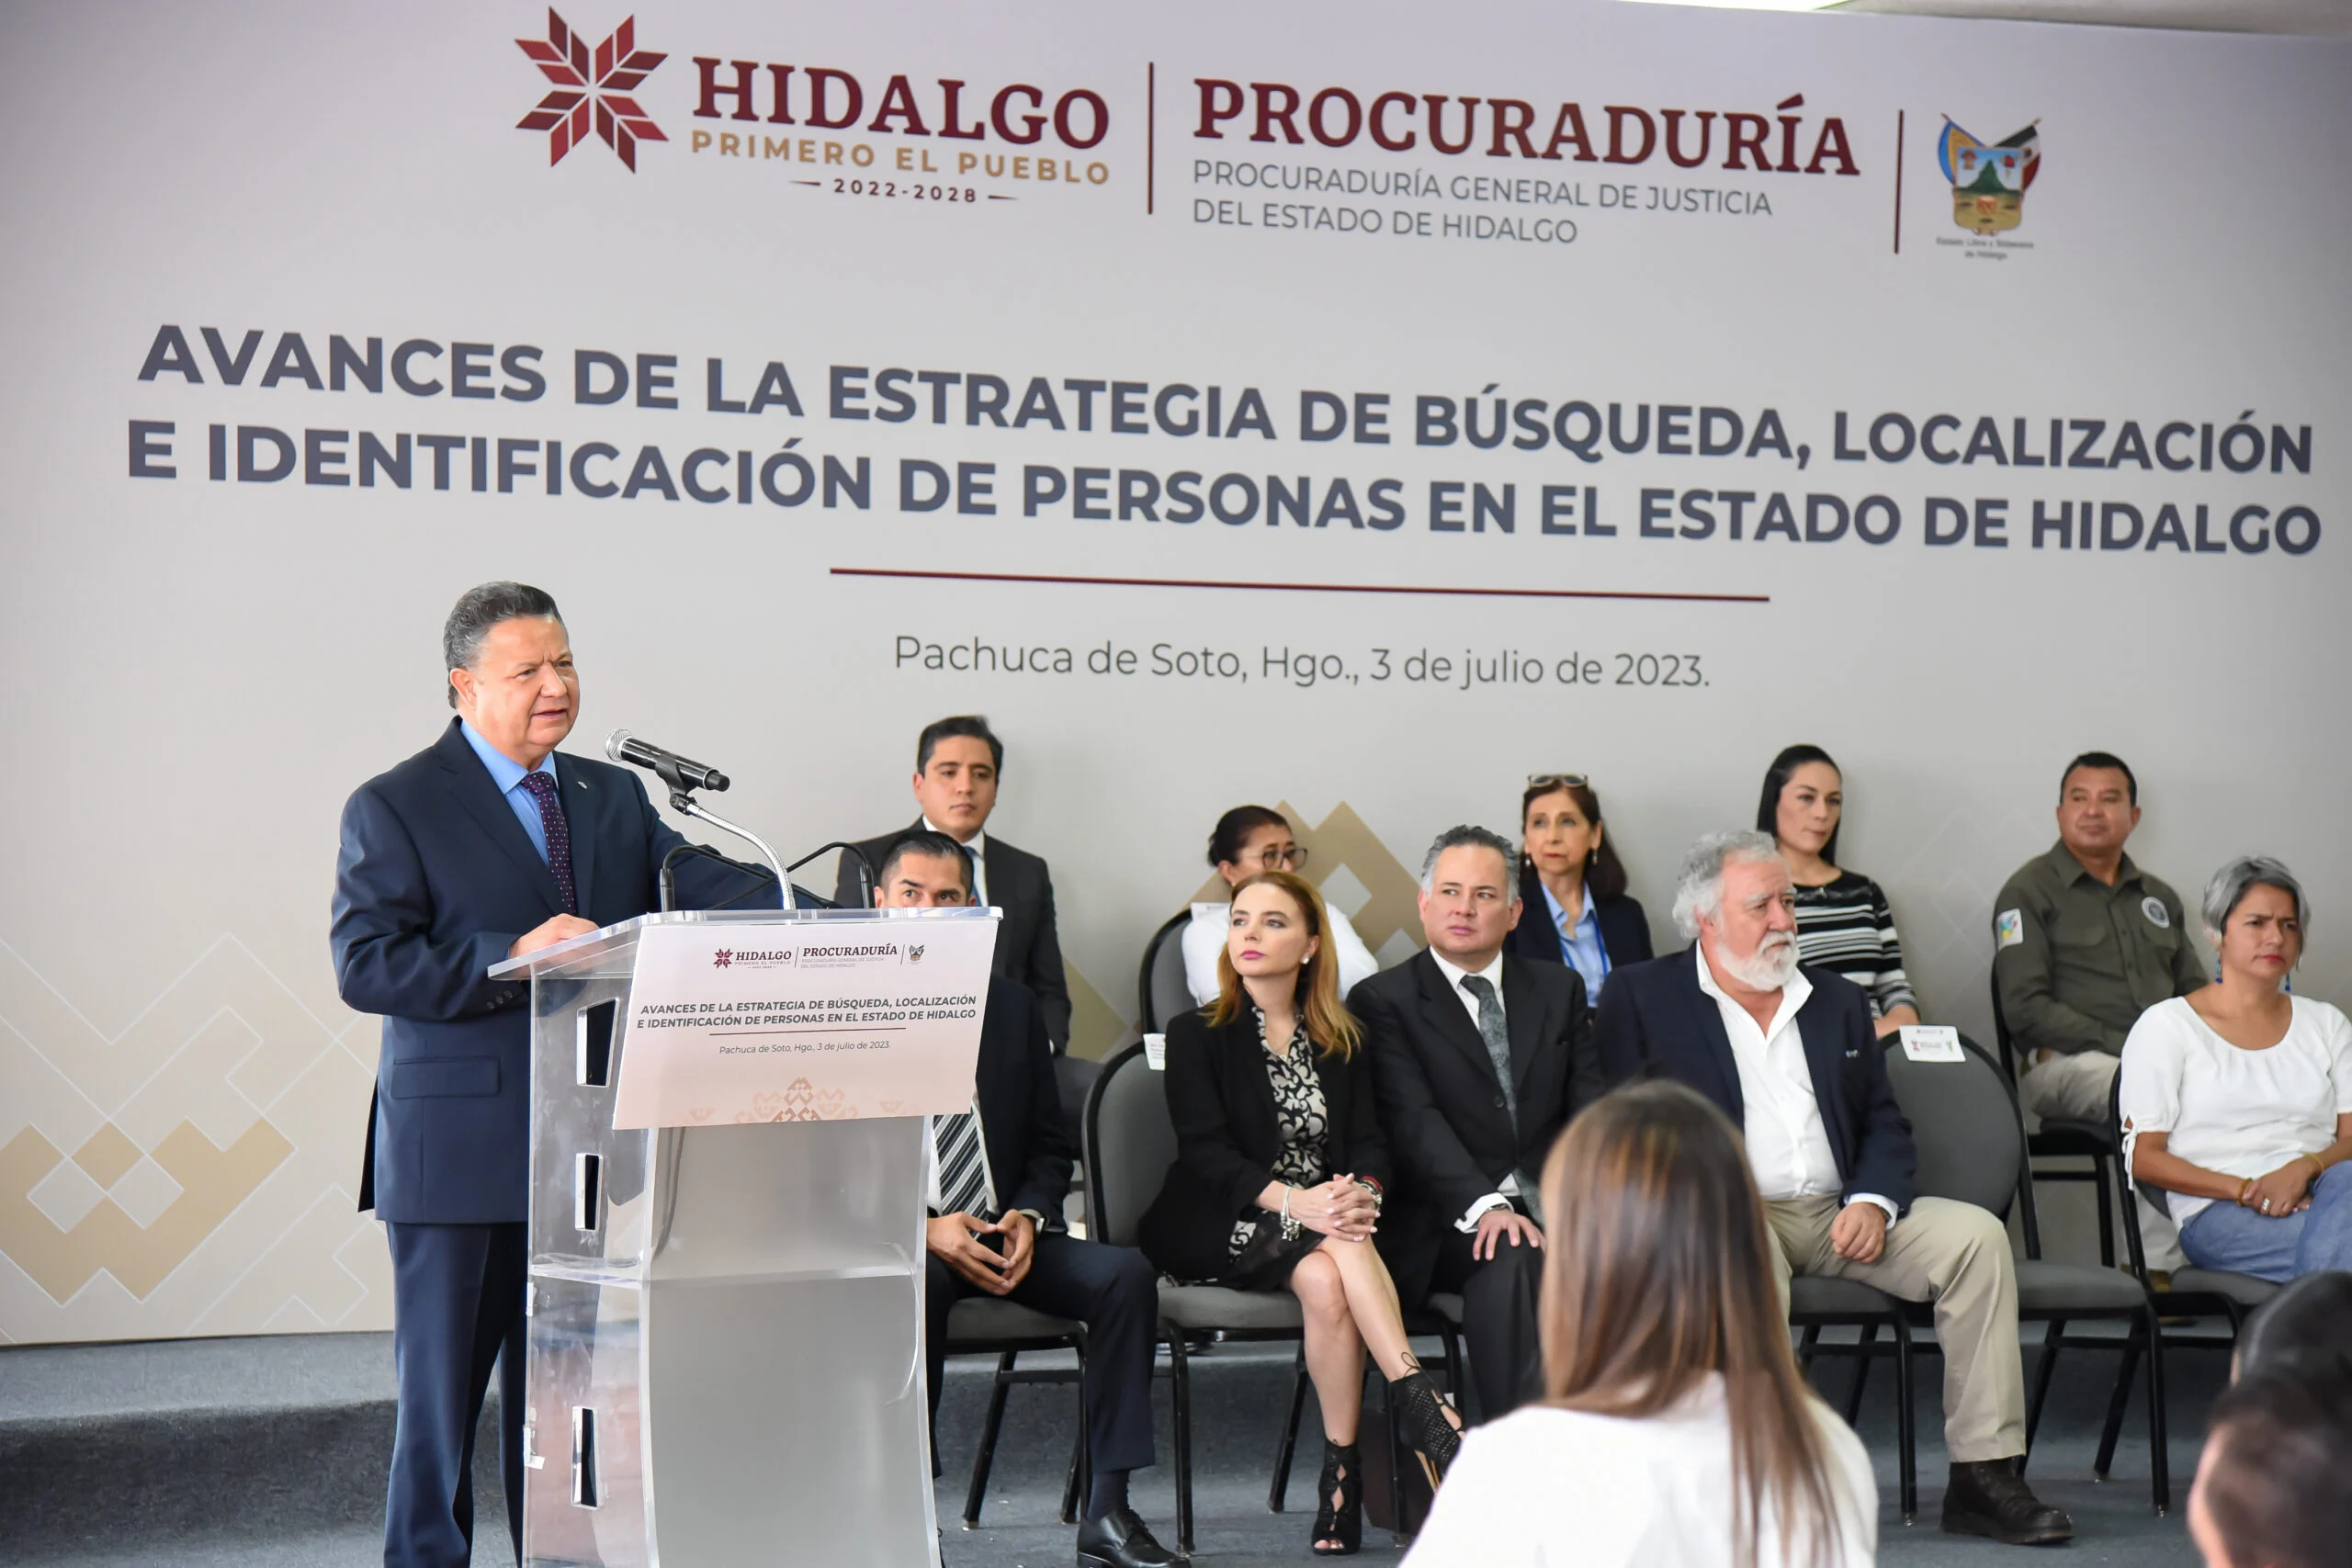 El Modelo de Hidalgo Para Búsqueda e Identificación de Personas Desaparecidas y no Localizadas Puede Constituirse en Modelo Referente Para el Resto del País”Encinas